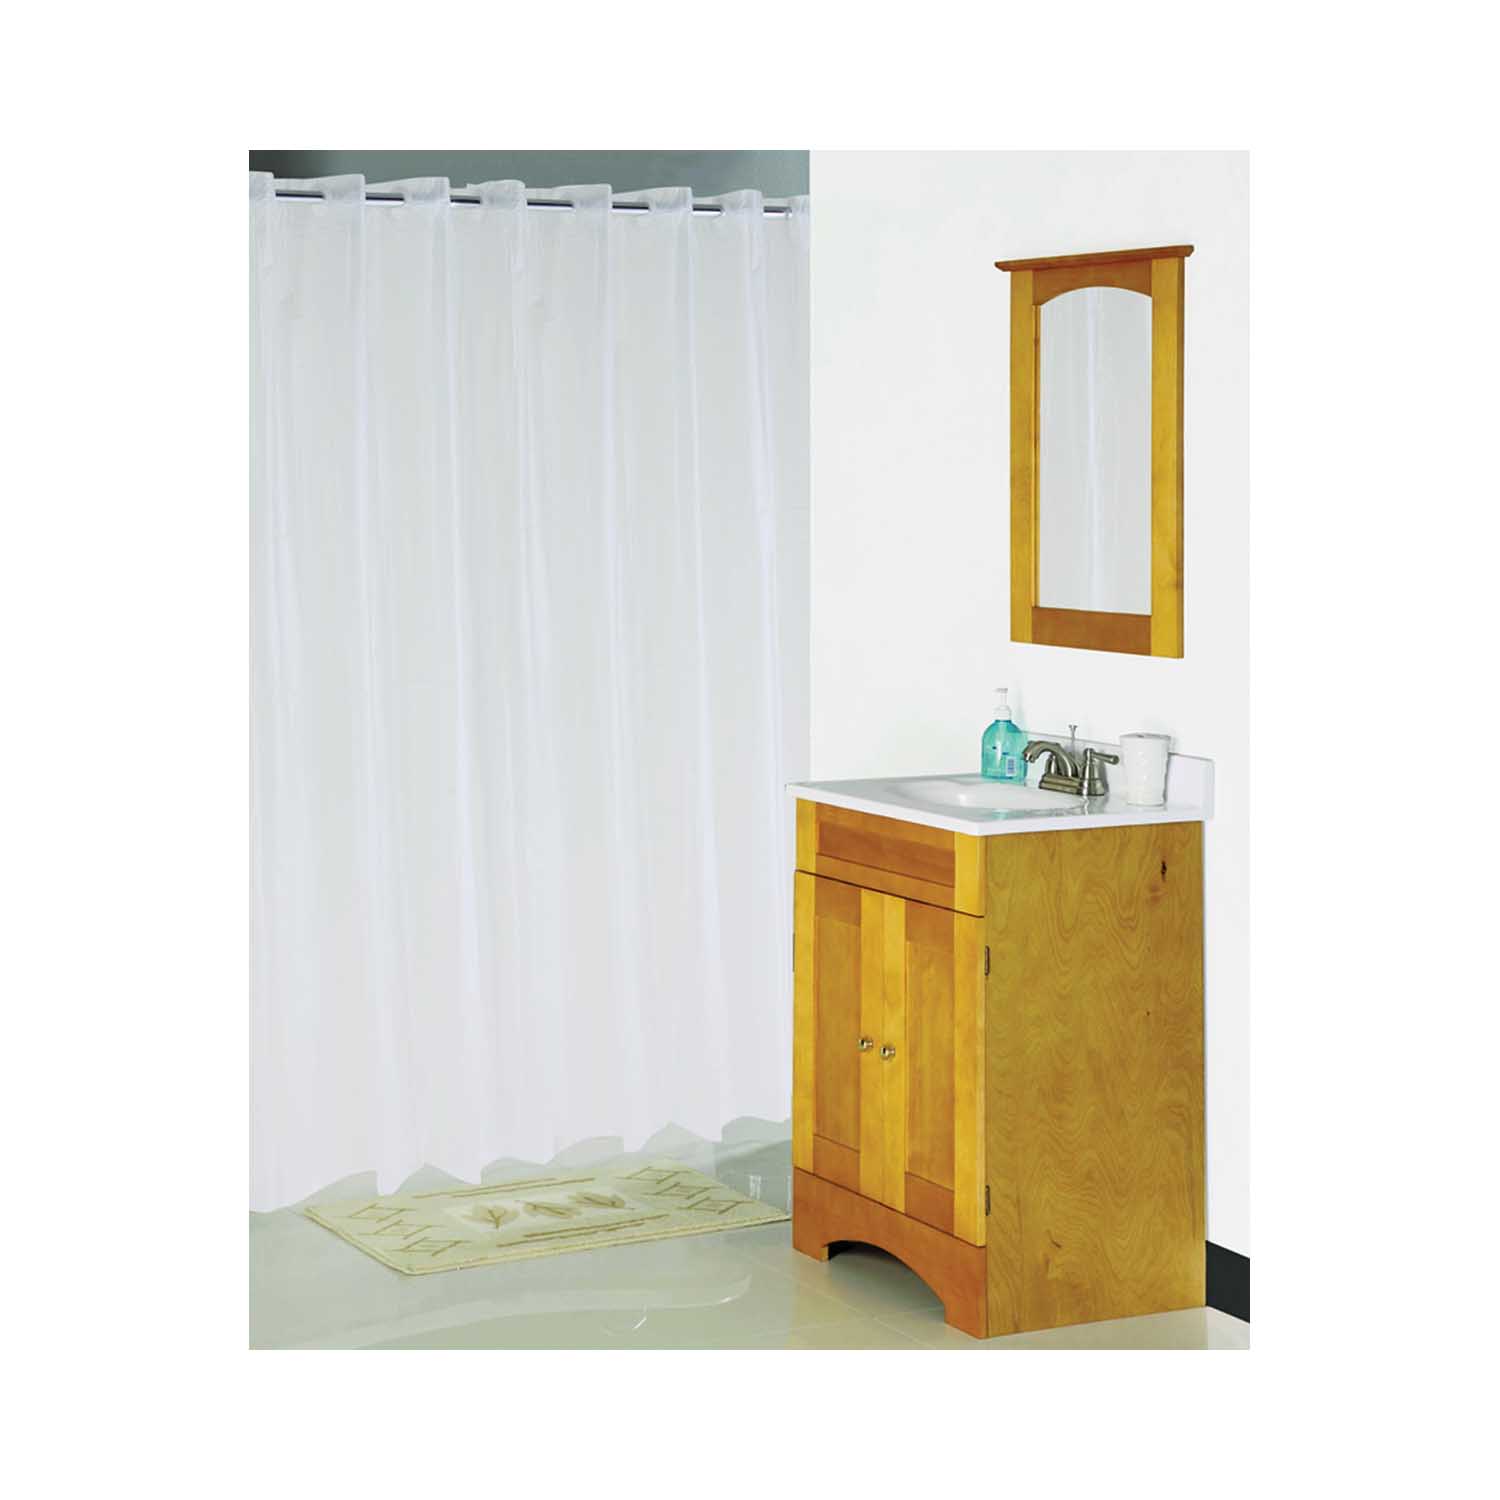 XG-02-FS Hookless Shower Curtain, Vinyl